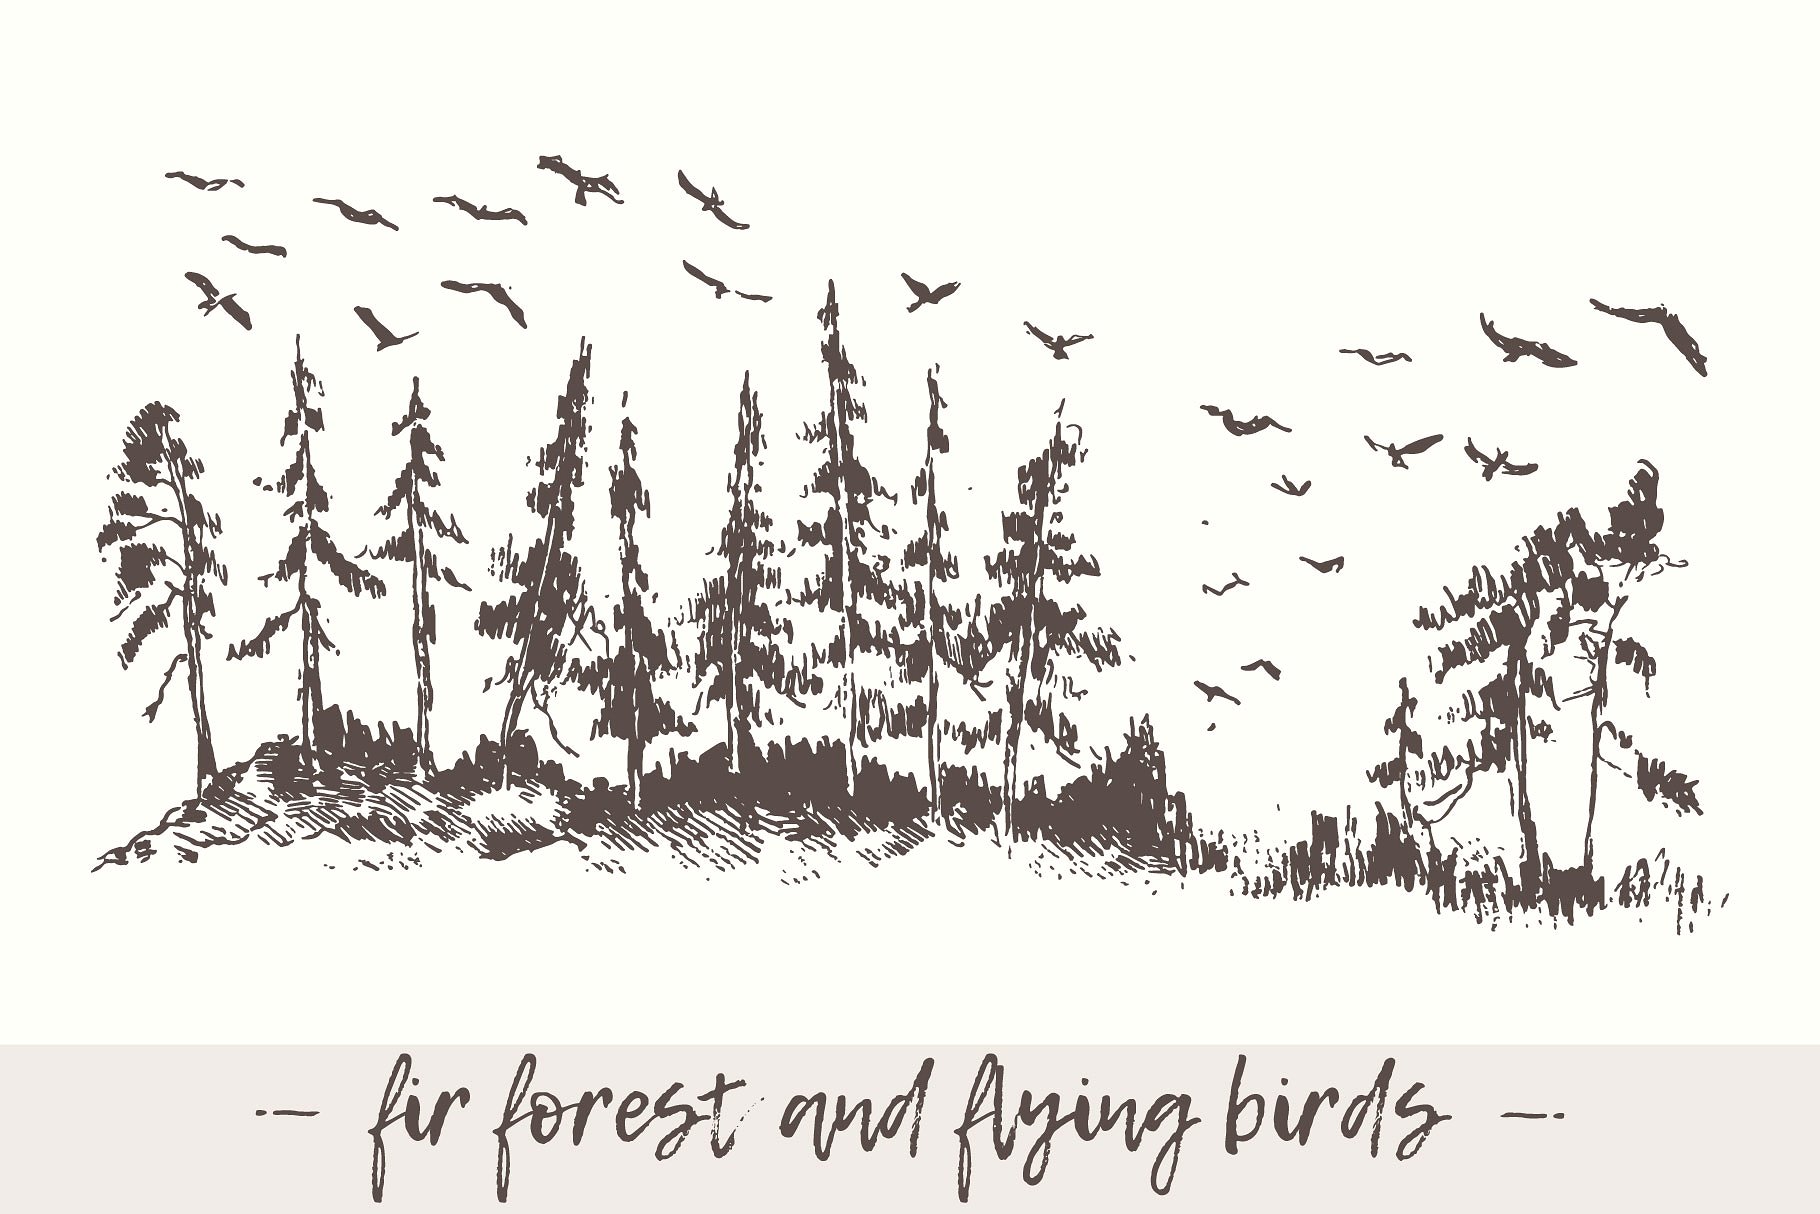 杉木林鸟类景观素描图形 Landscape with fir forest and birds插图